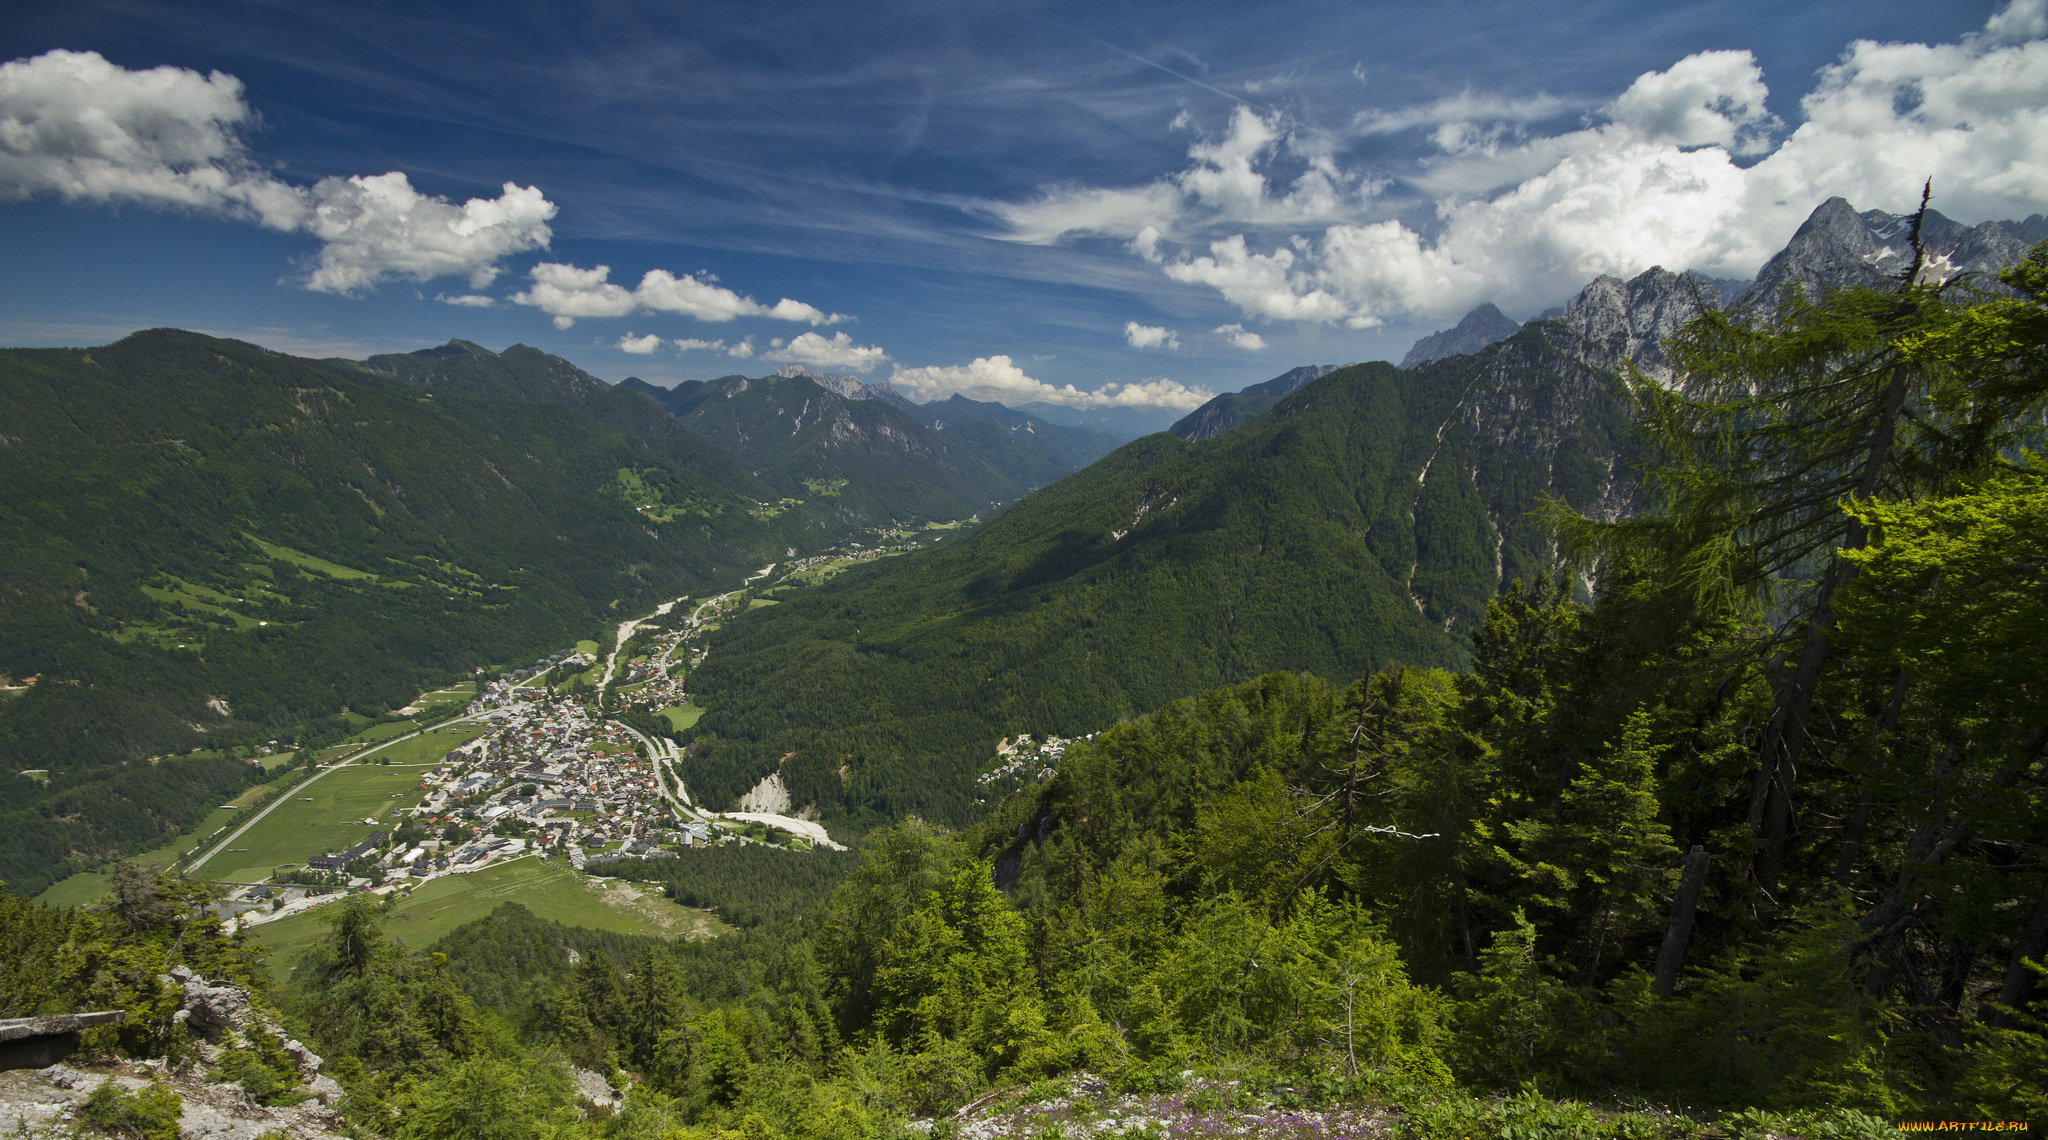 kranjska, gora, slovenia, природа, горы, краньска-гора, словения, долина, городок, панорама